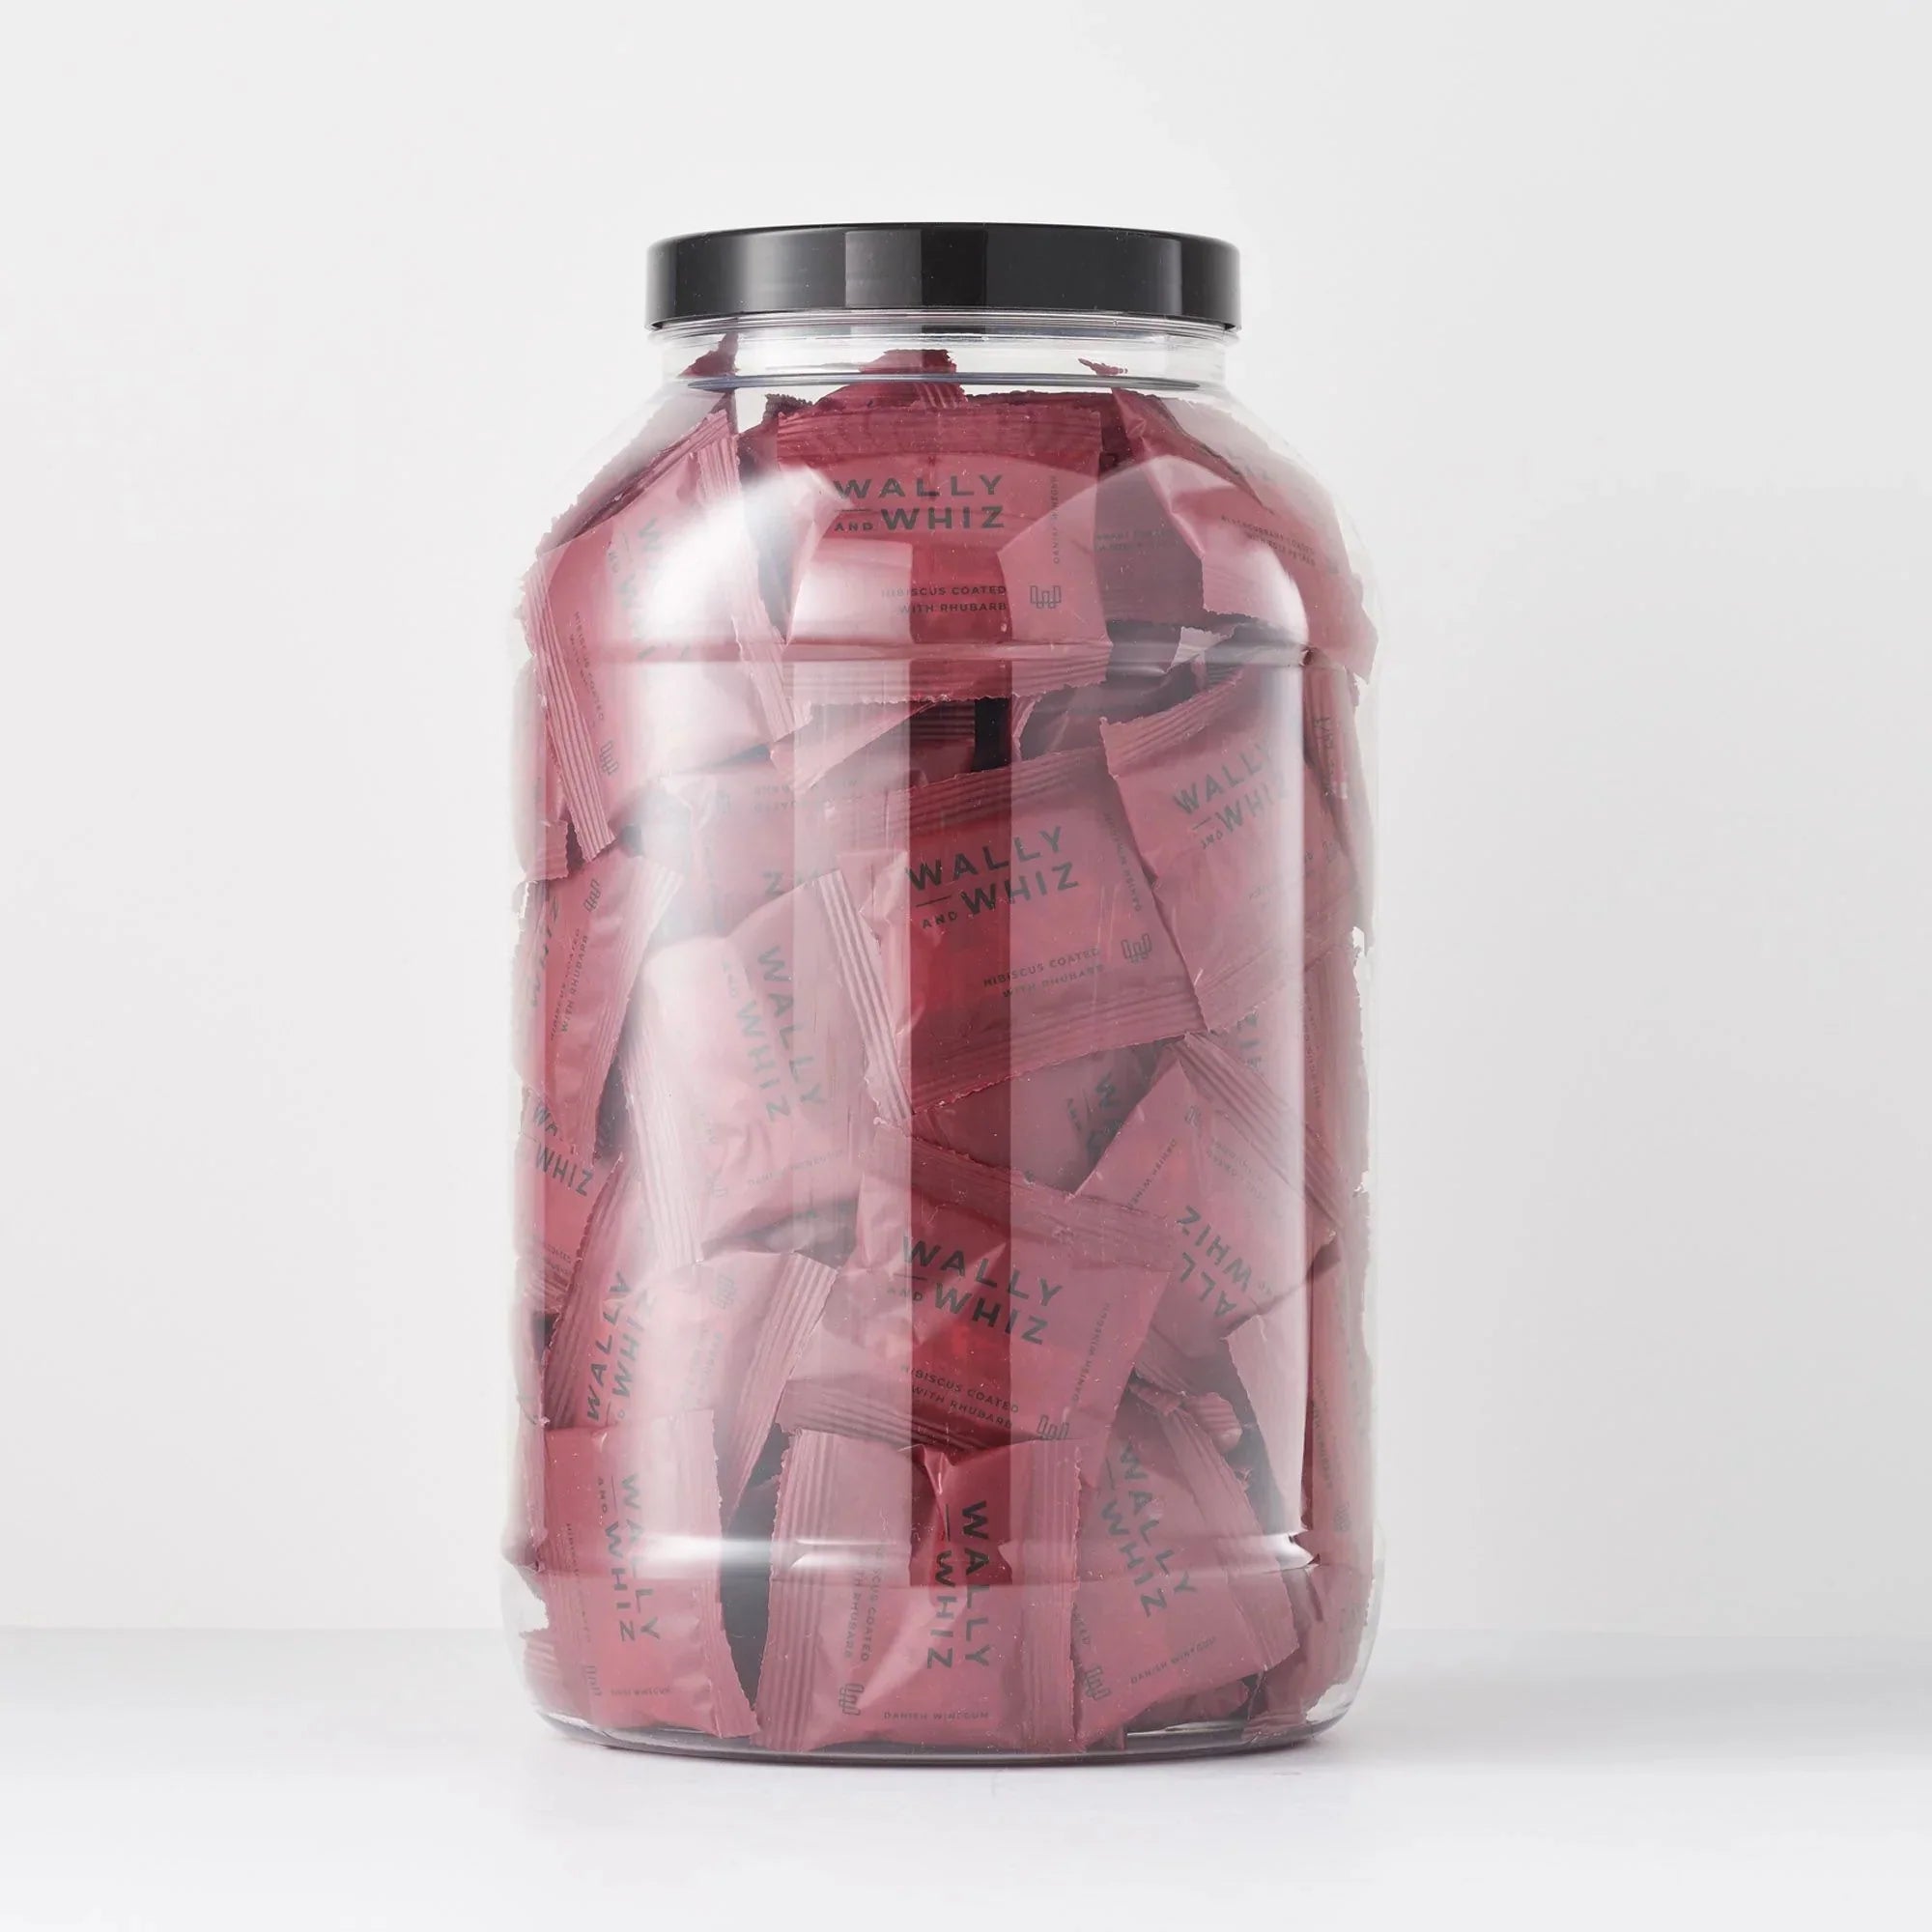 Wally And Whiz Pot de gomme à vin avec 125 flowpacks, hibiscus avec rhubarbe